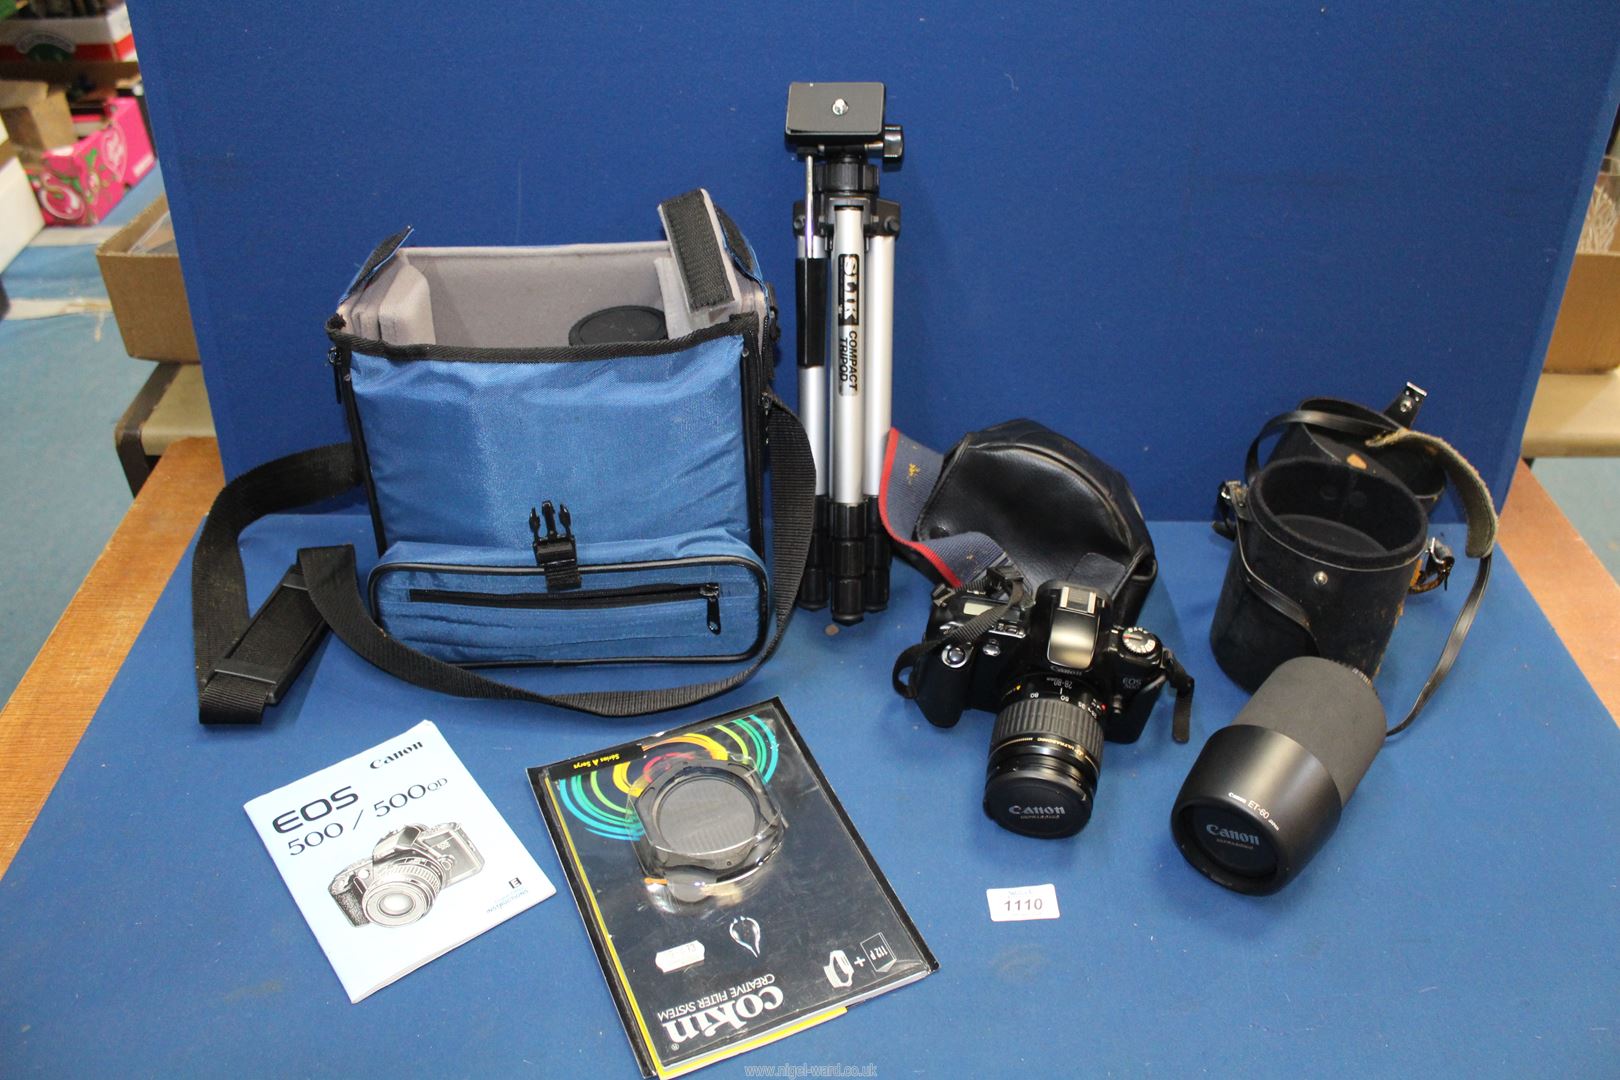 A Canon EOS 500 camera with ultrasonic lens, canon lens, tripod, etc.